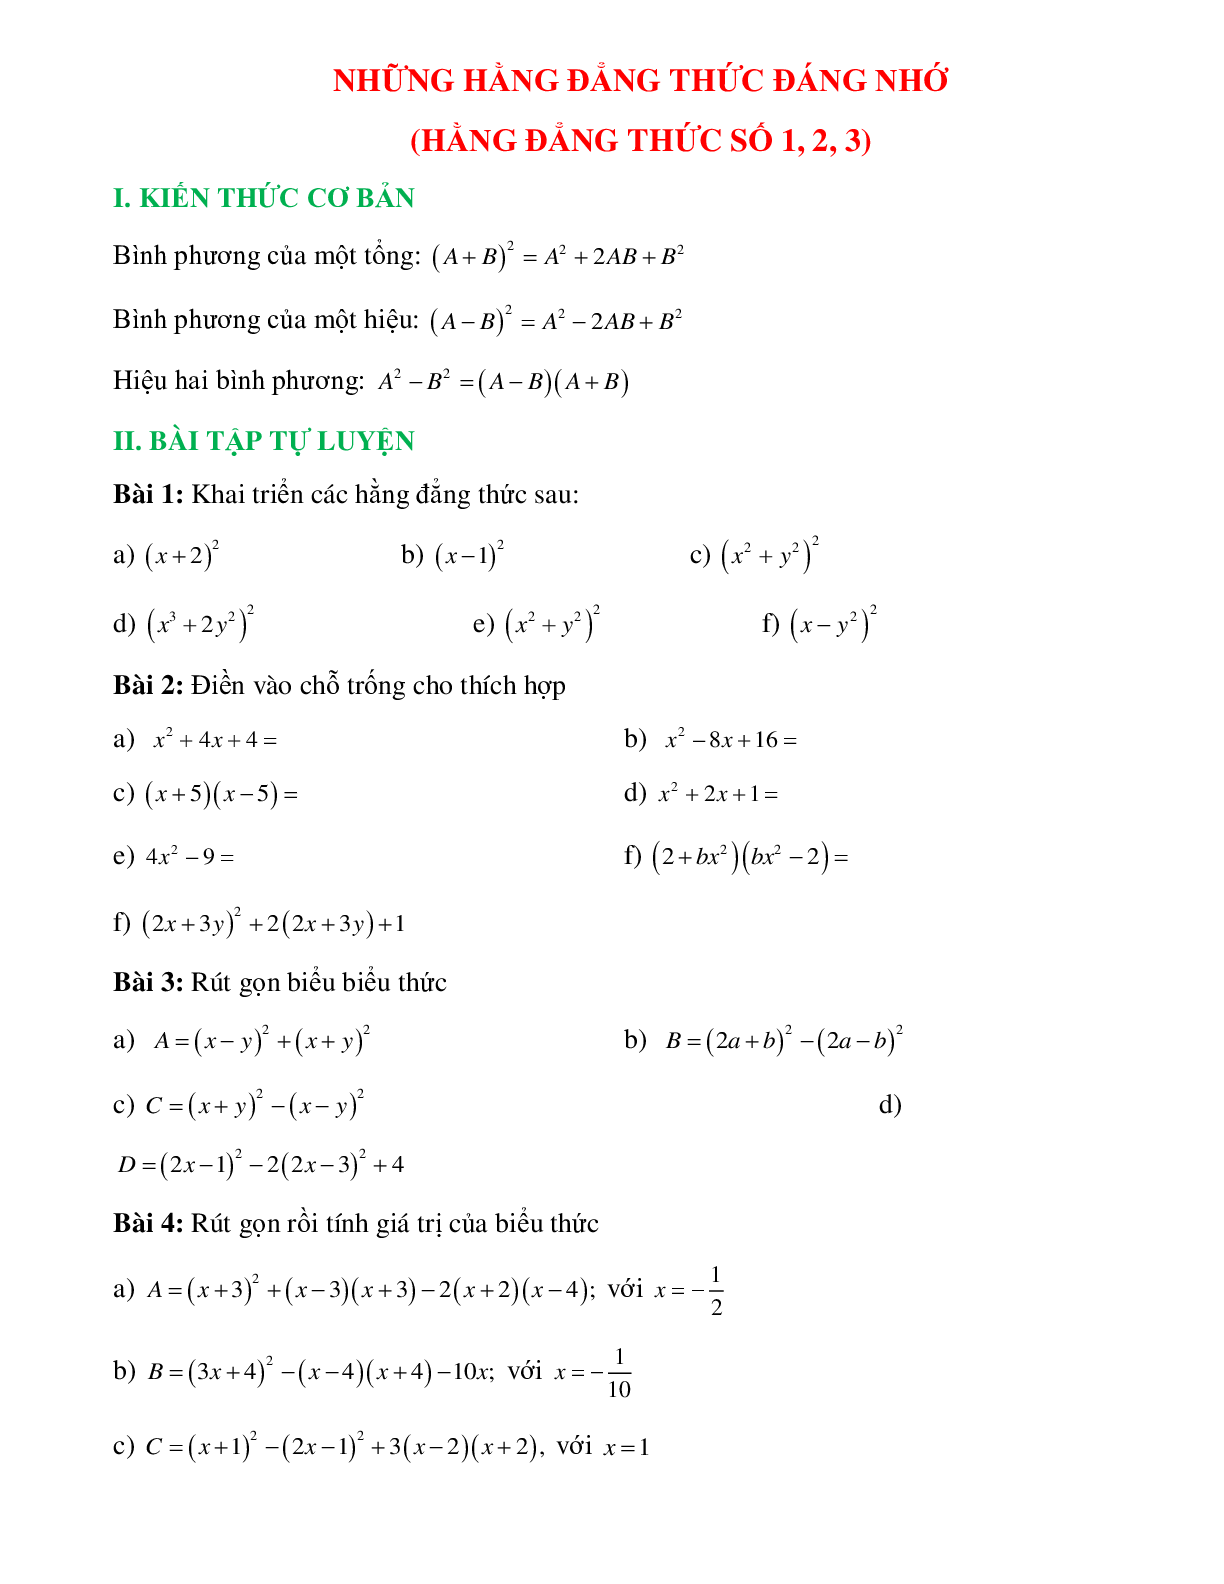 Những hằng đẳng thức đáng nhớ (số 1,2,3) (trang 1)